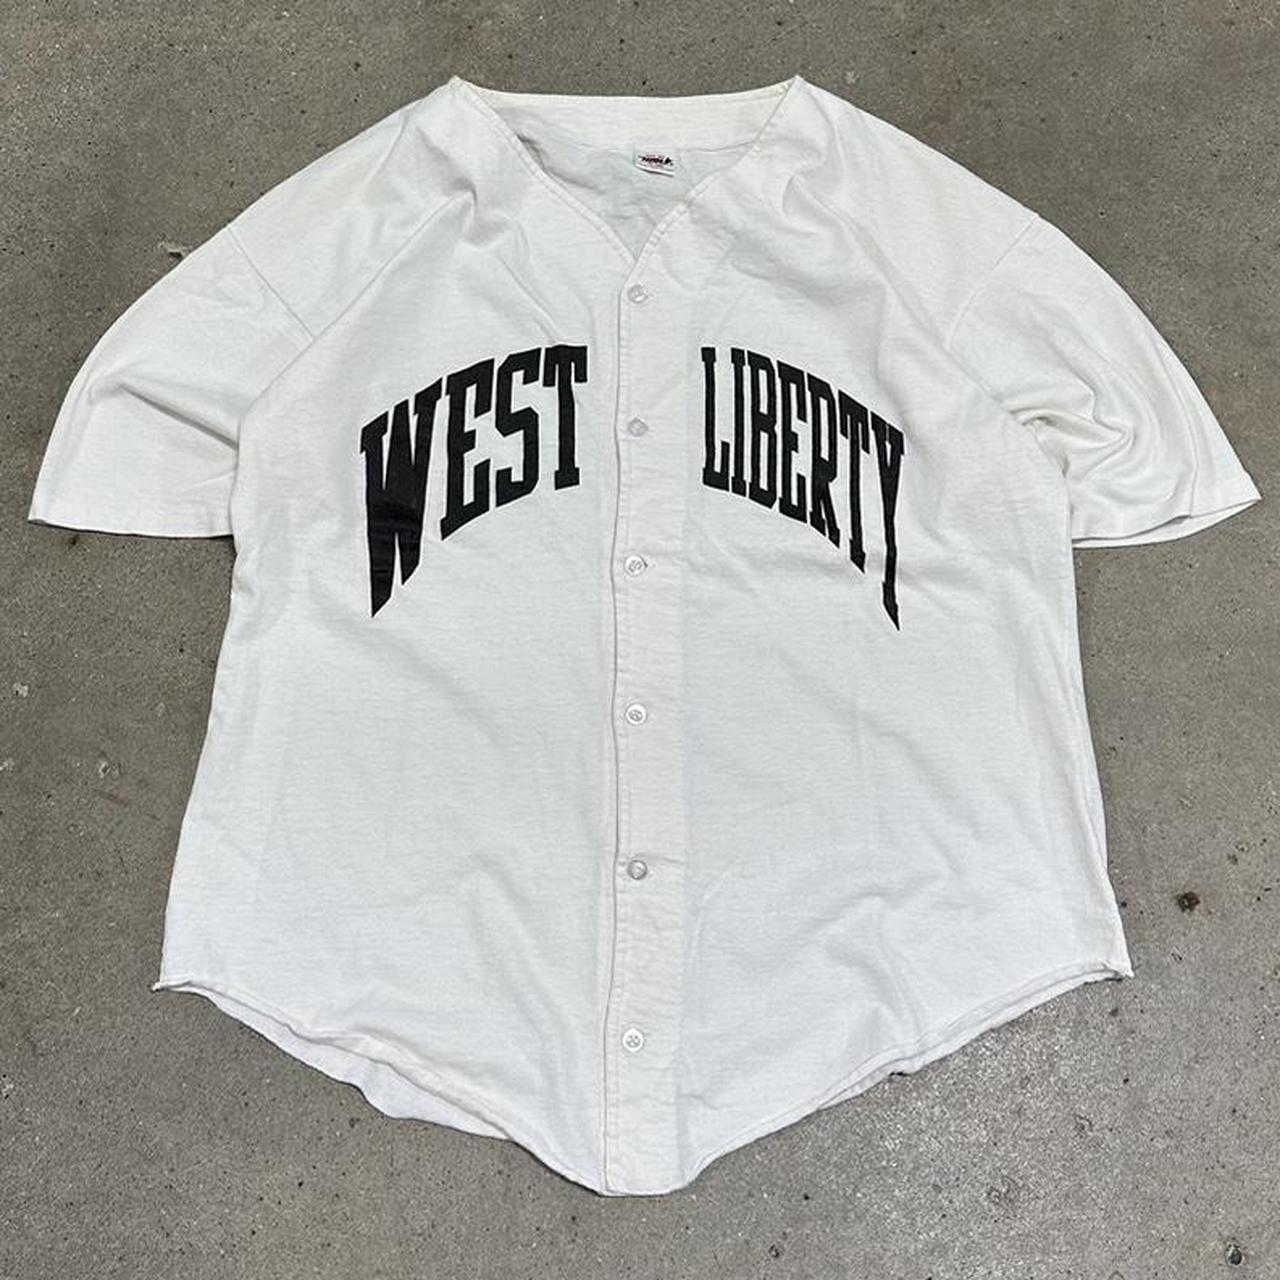 Vintage West Liberty Baseball Jersey Size XL... - Depop